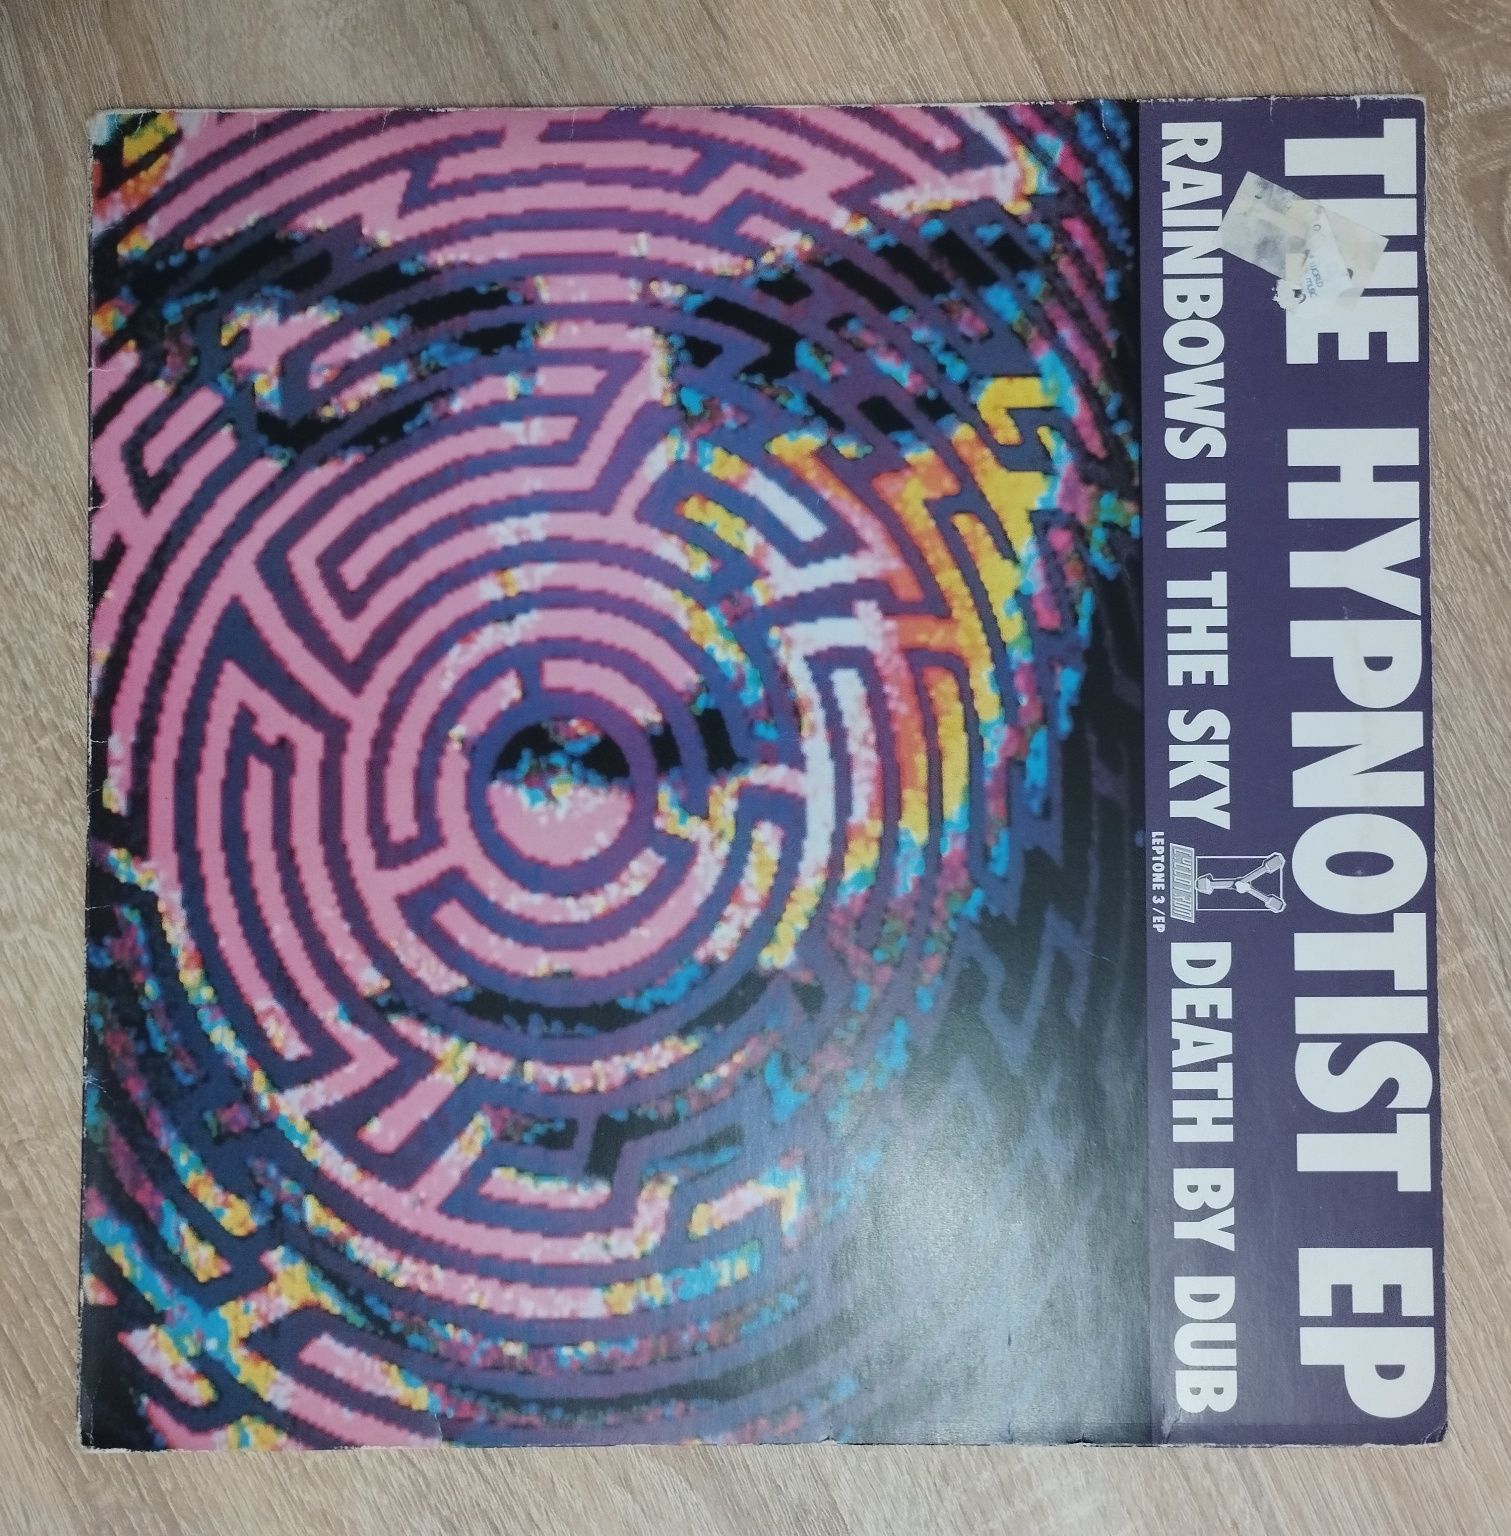 The Hypnotist – The Hypnotist EP (winyl 12") [1991]